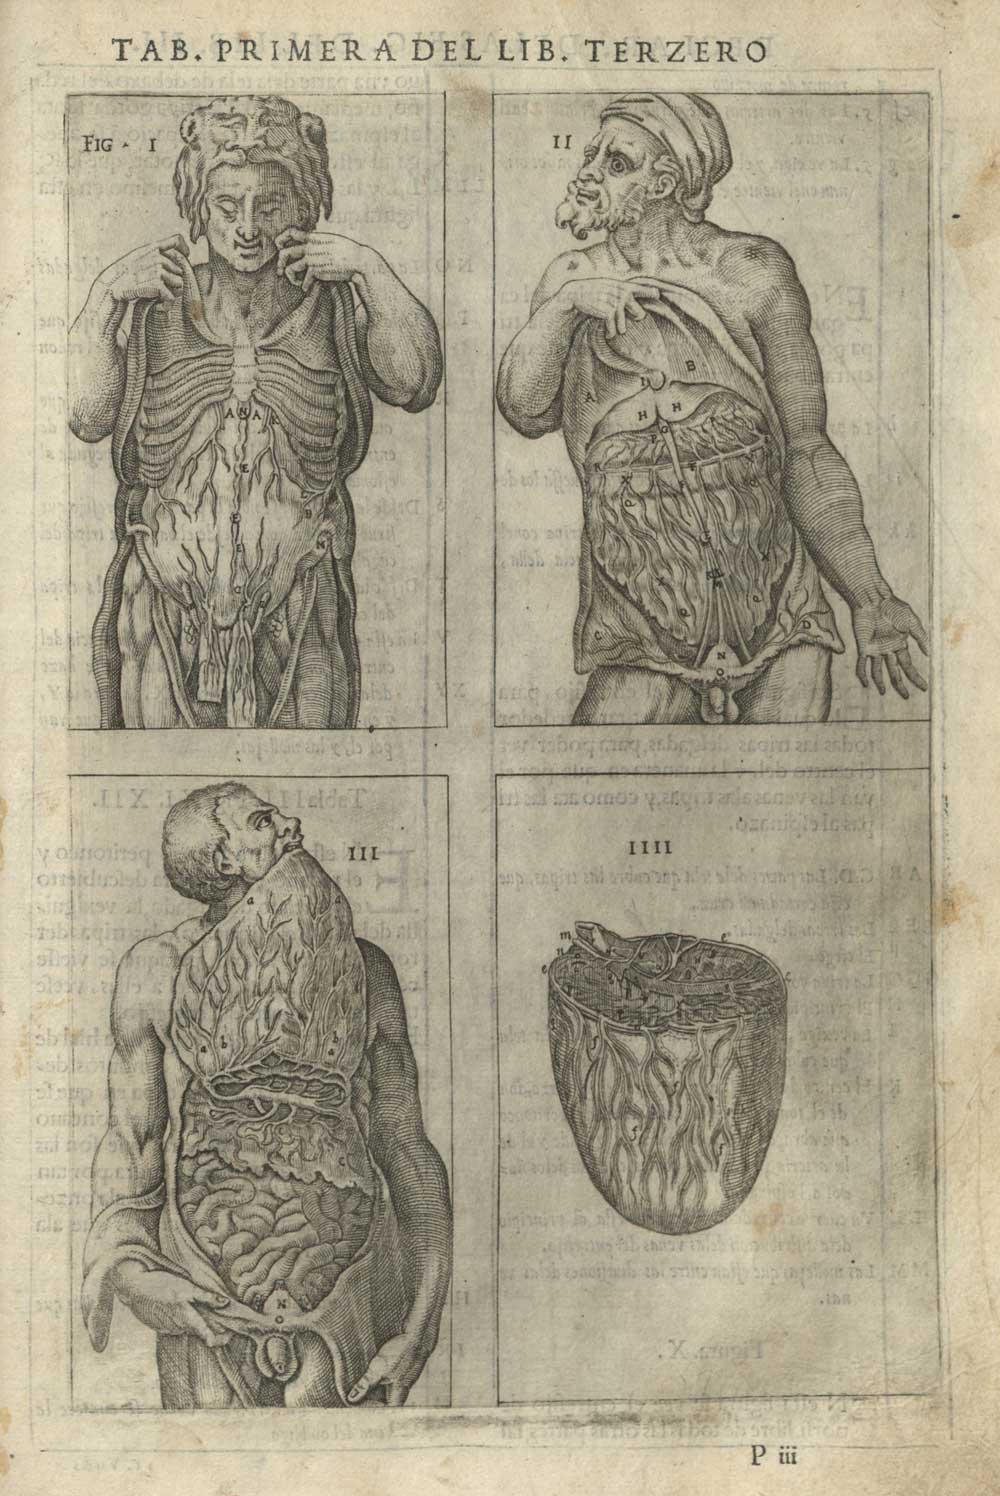 Engraving from Historia de la composicion del cuerpo humano. Juan de Valderde, 1556.